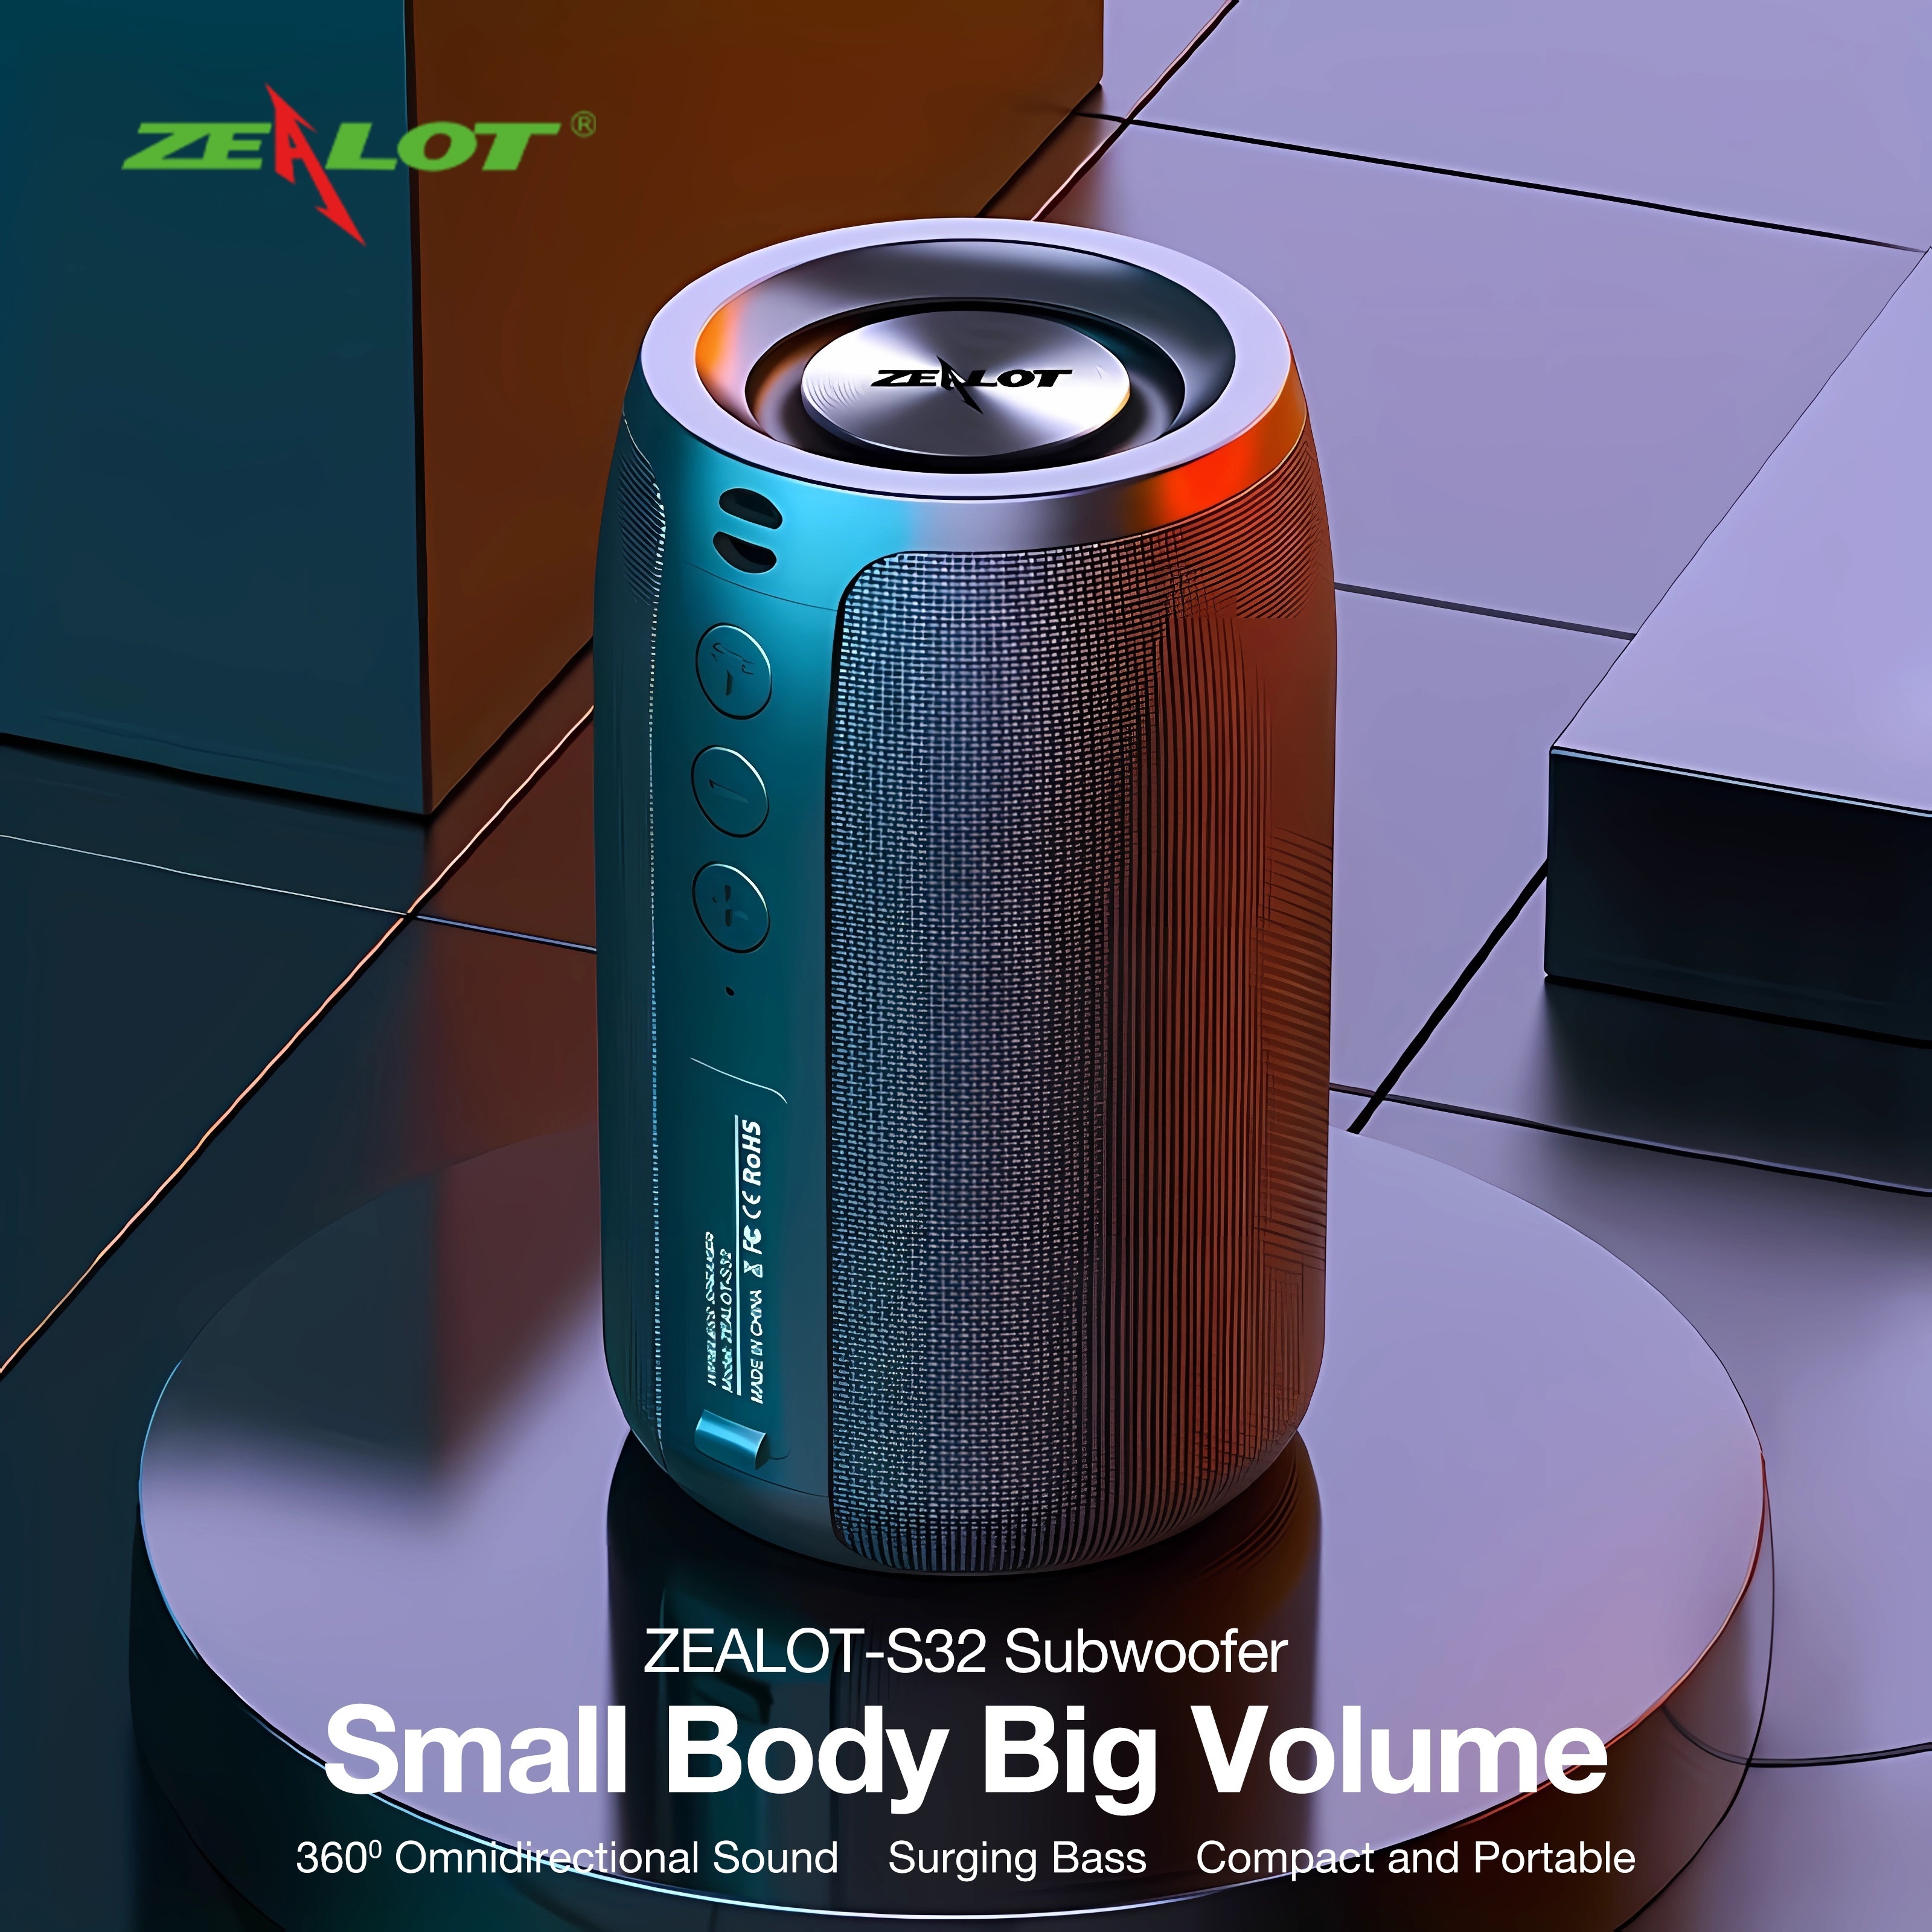 New Box3-Mini Wireless Bluetooth Speaker War God RGB Portable